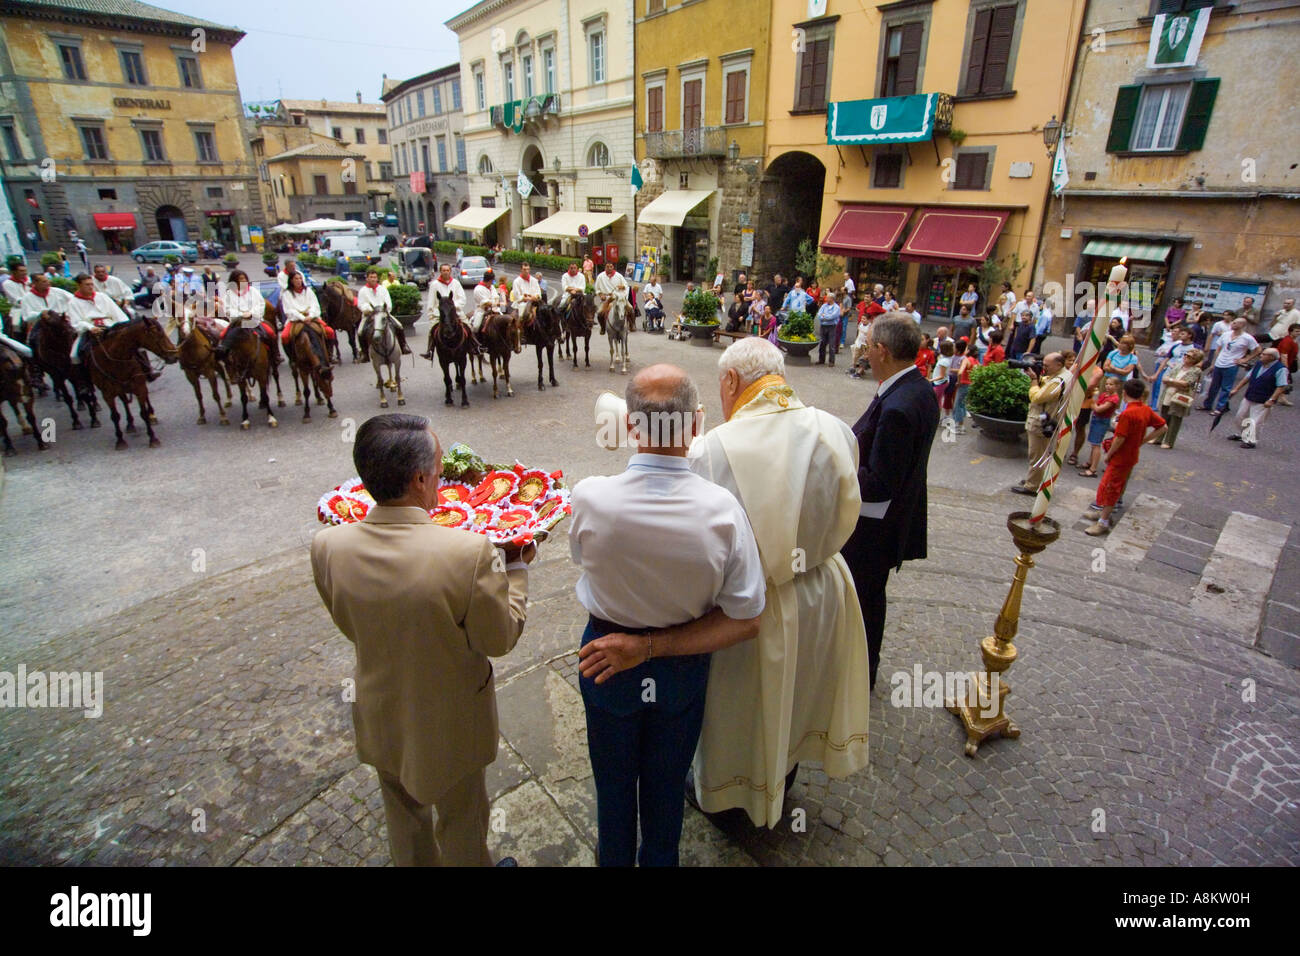 La benedizione dei piloti dal sacerdote prima dell'annuale Palio dell'oc cavallo di razza in Orvieto Umbria Italia. JMH2908 Foto Stock